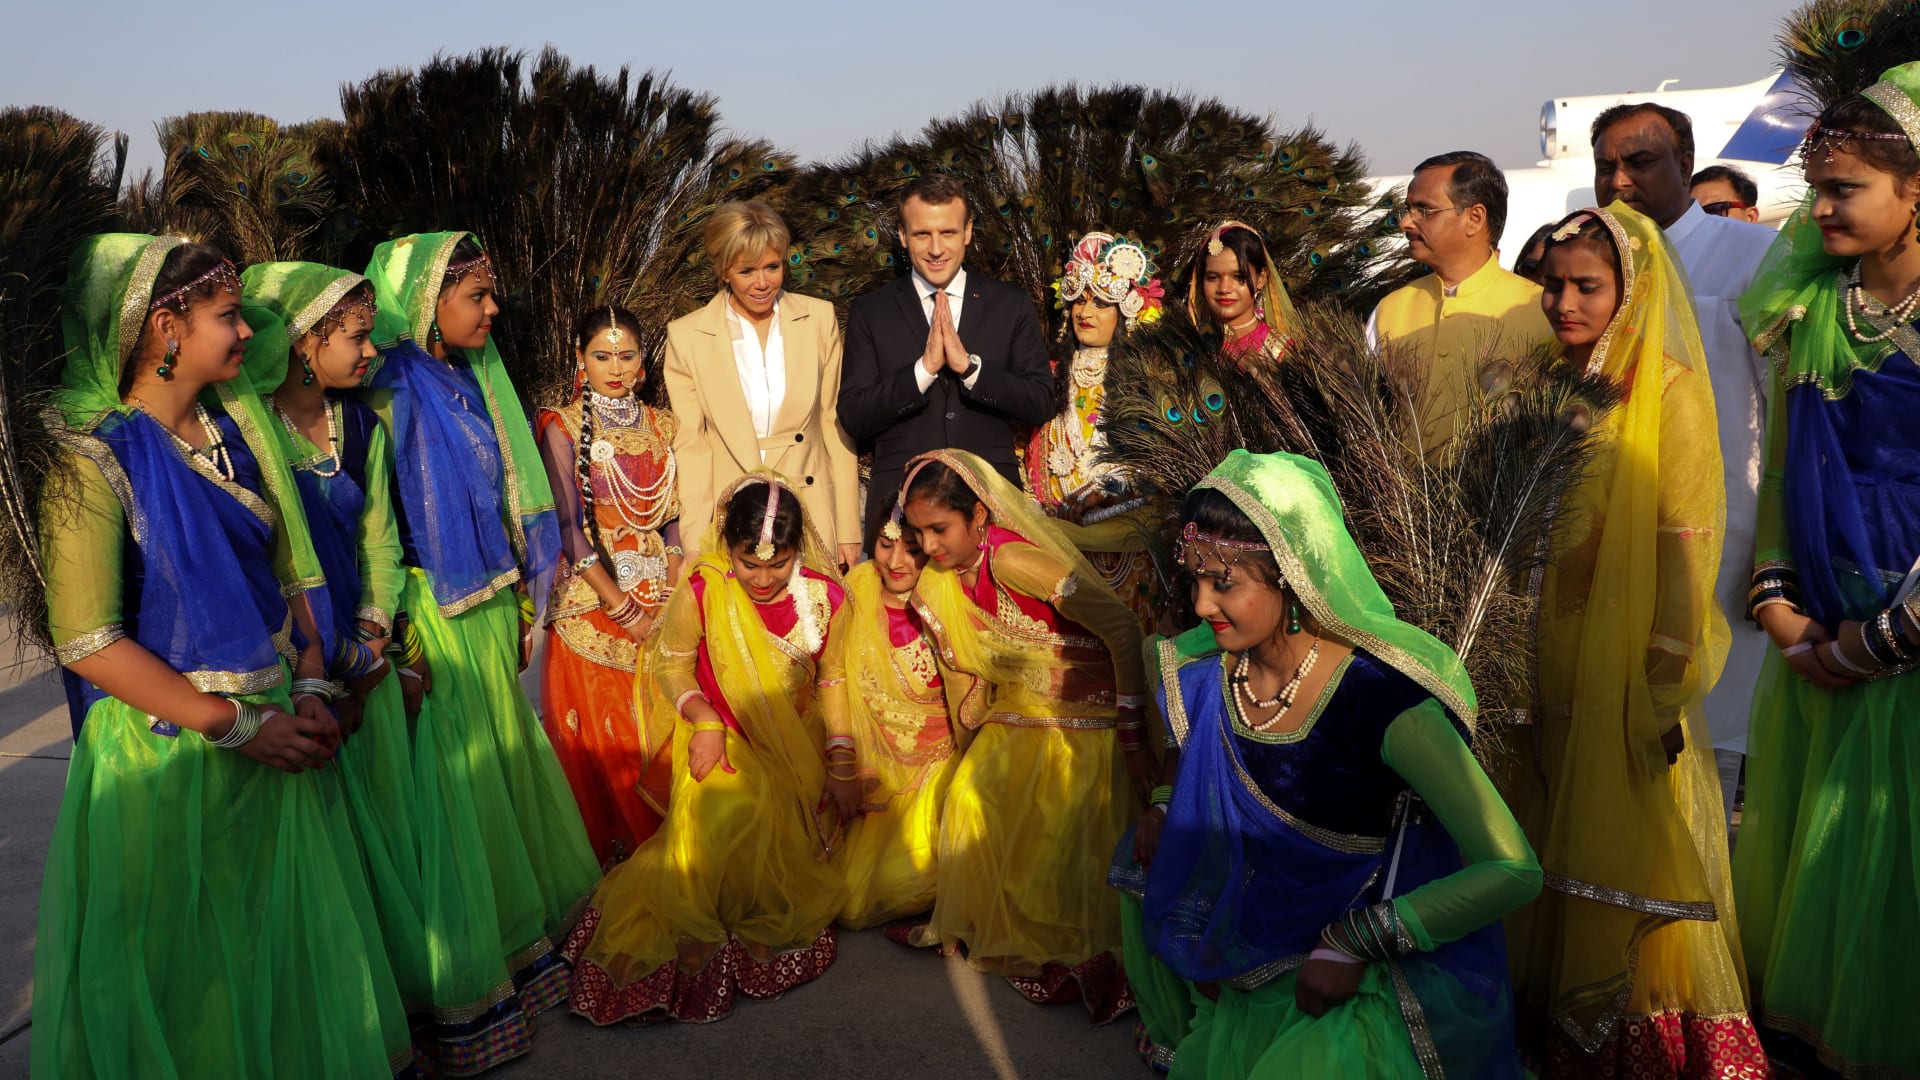 الرئيس الفرنسي برفقة زوجته في "جولة سياحية" بالهند